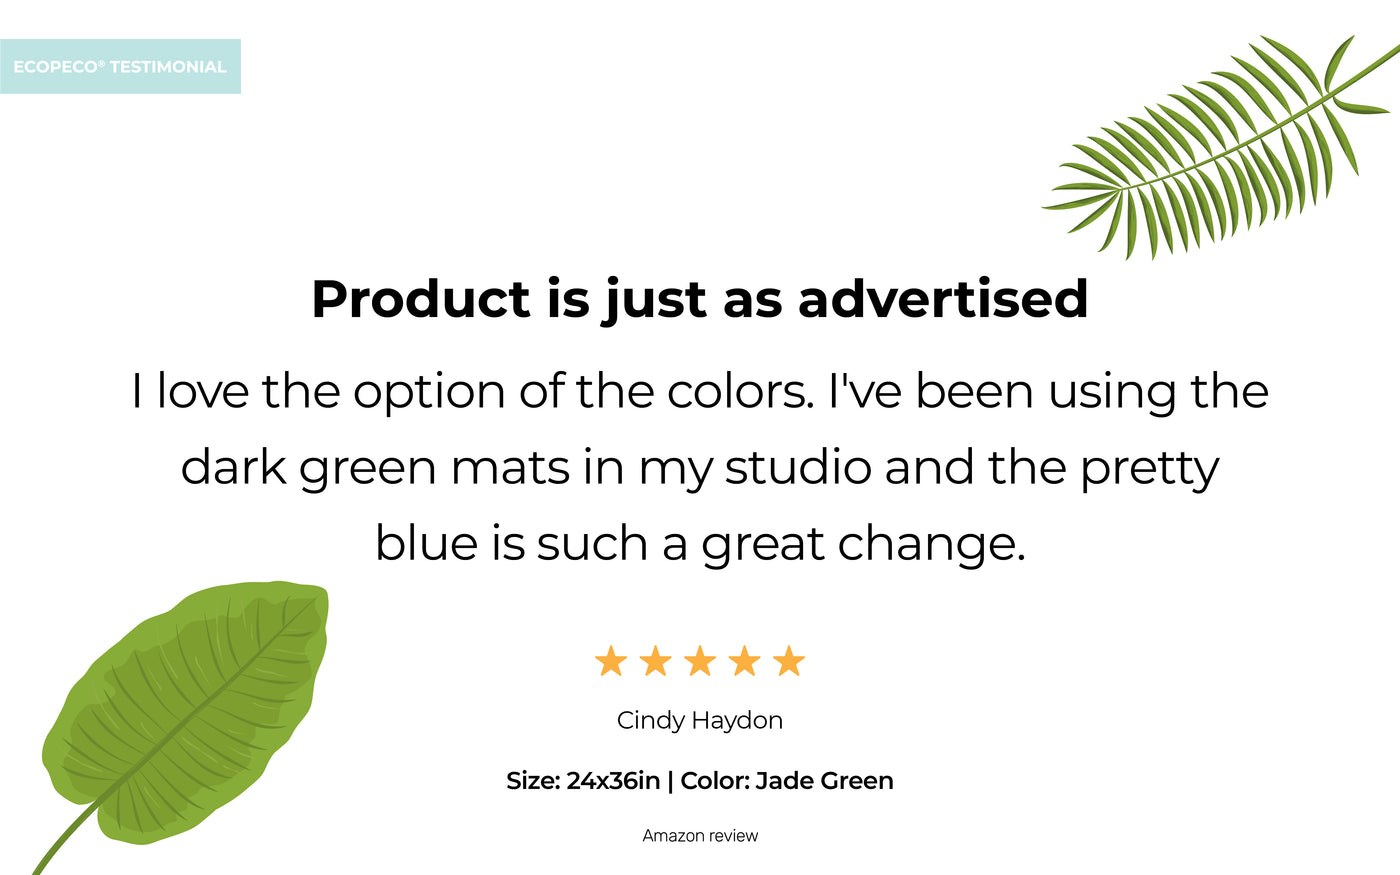 ecopeco® Quetzal Blue 3 Pack Self-Healing, Reversible Eco Cutting Mats